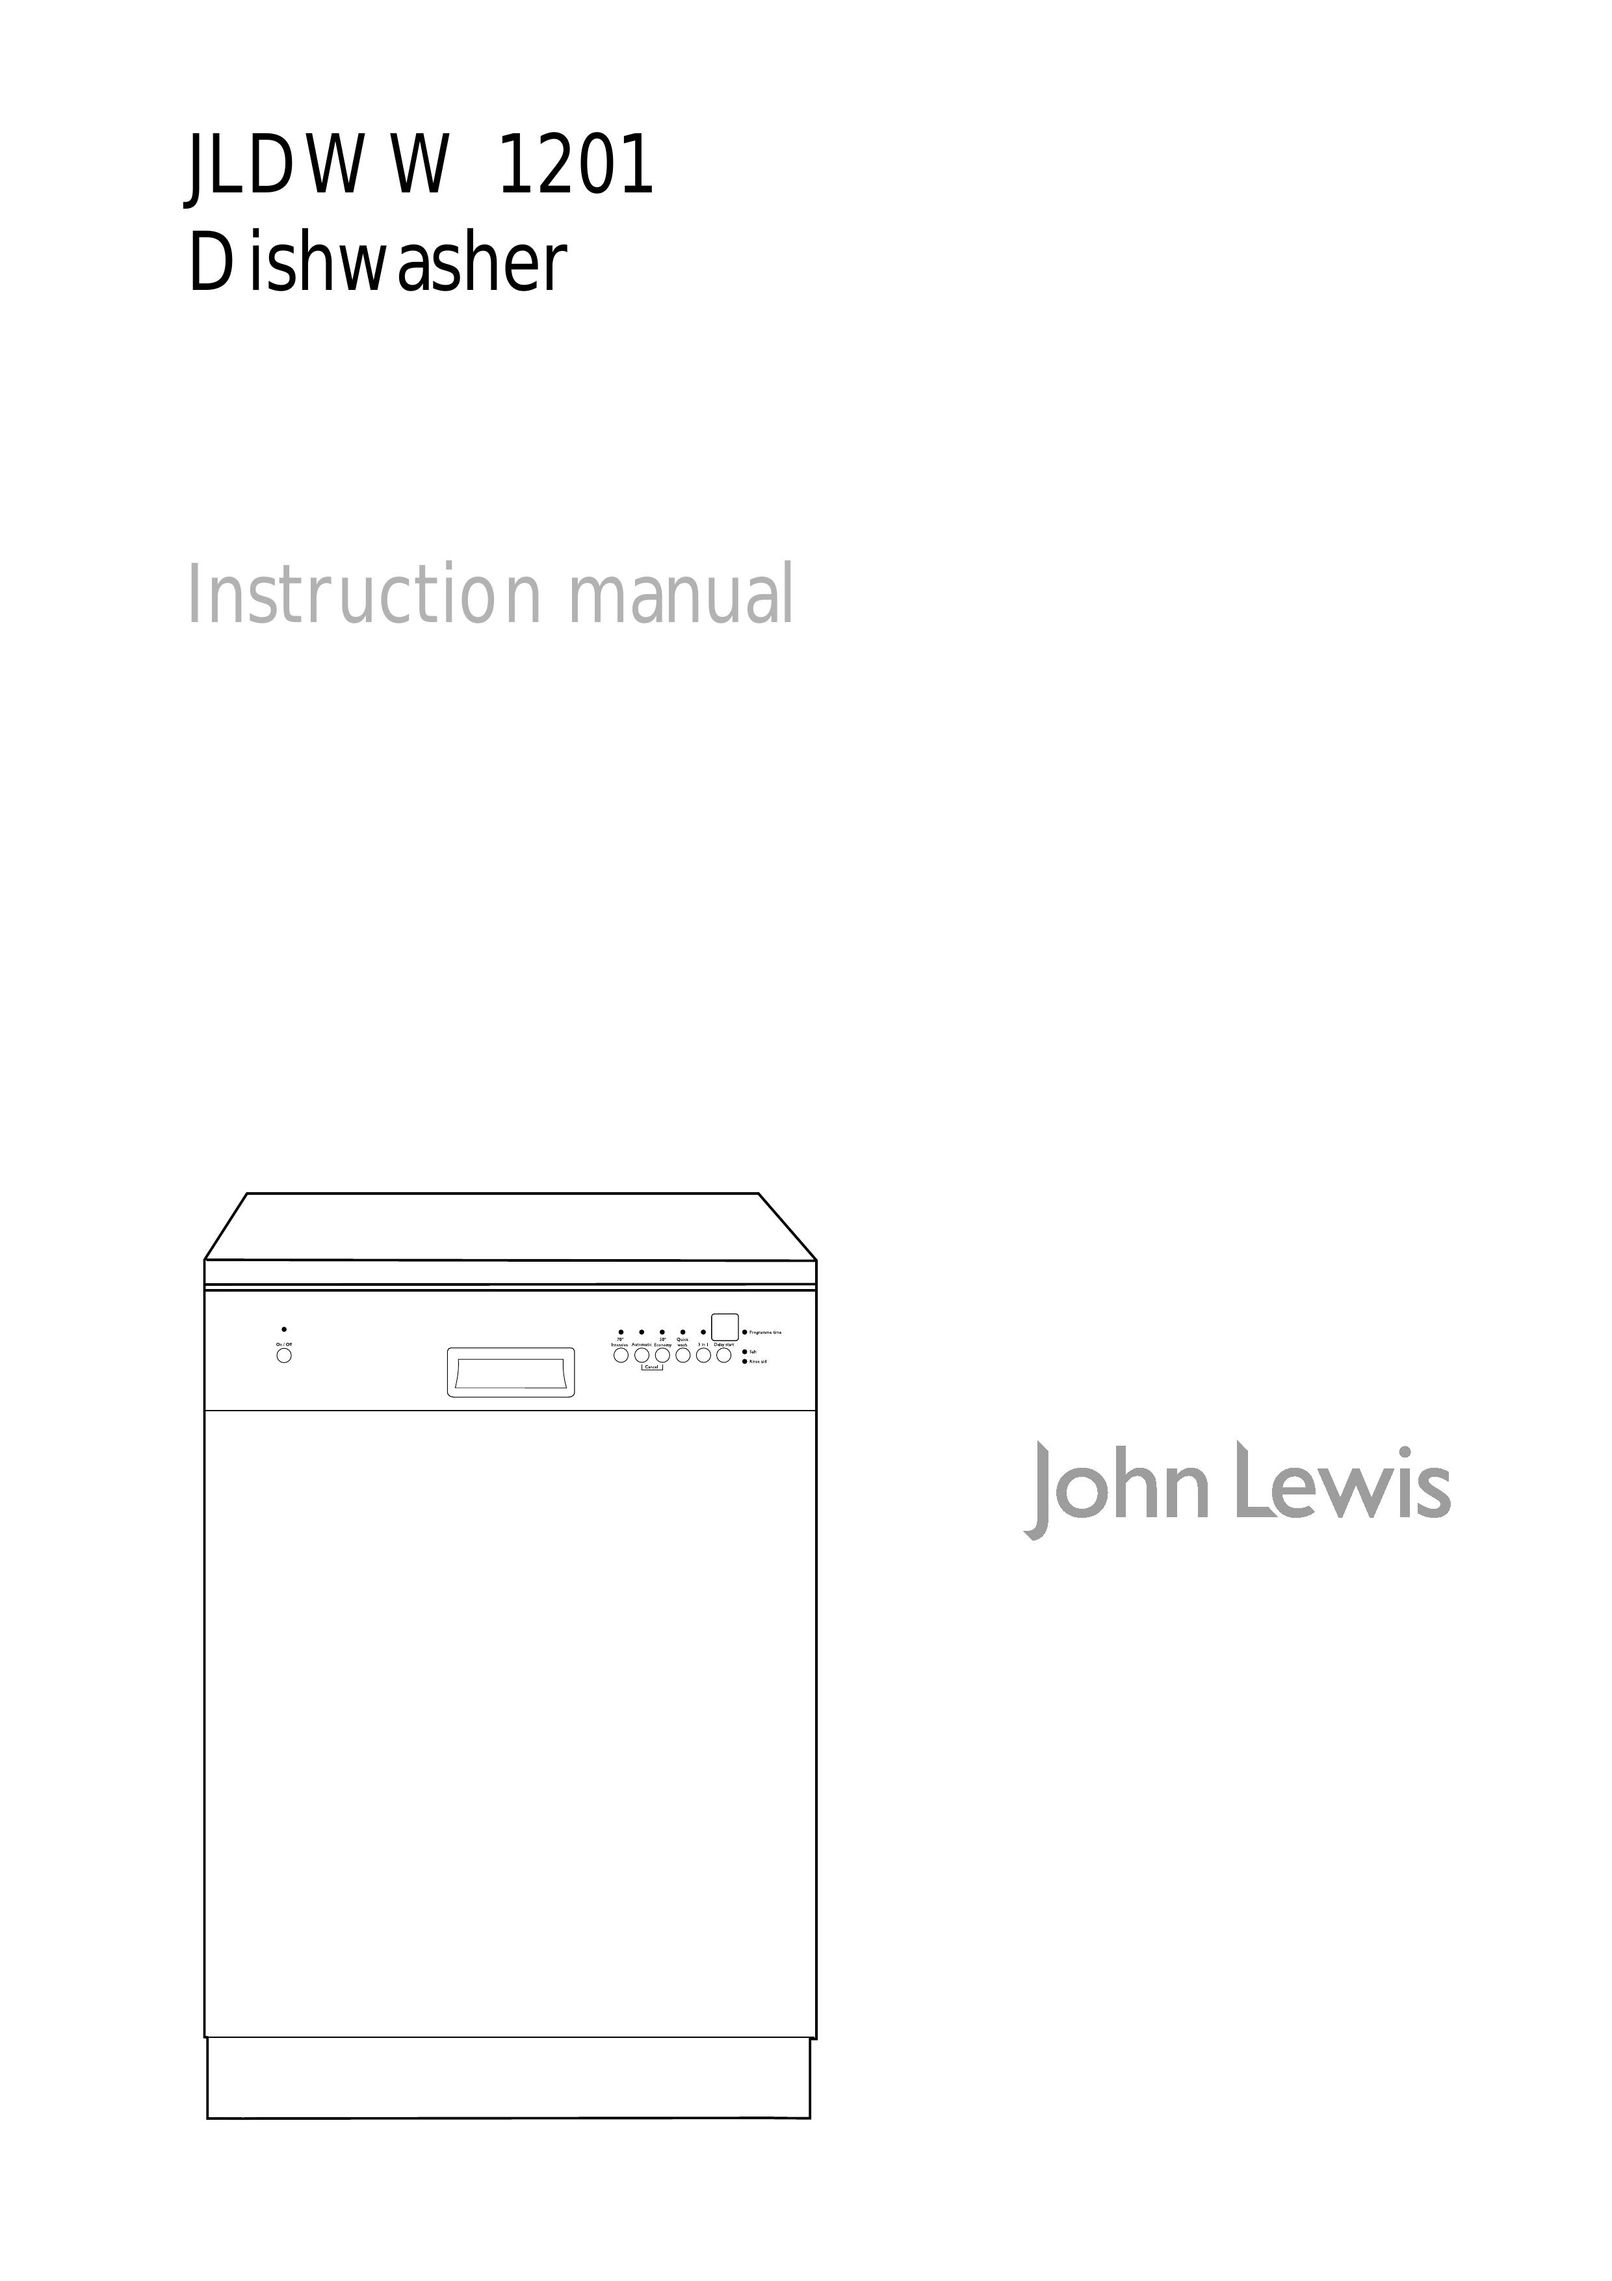 John Lewis JLDWW 1201 Dishwasher User Manual